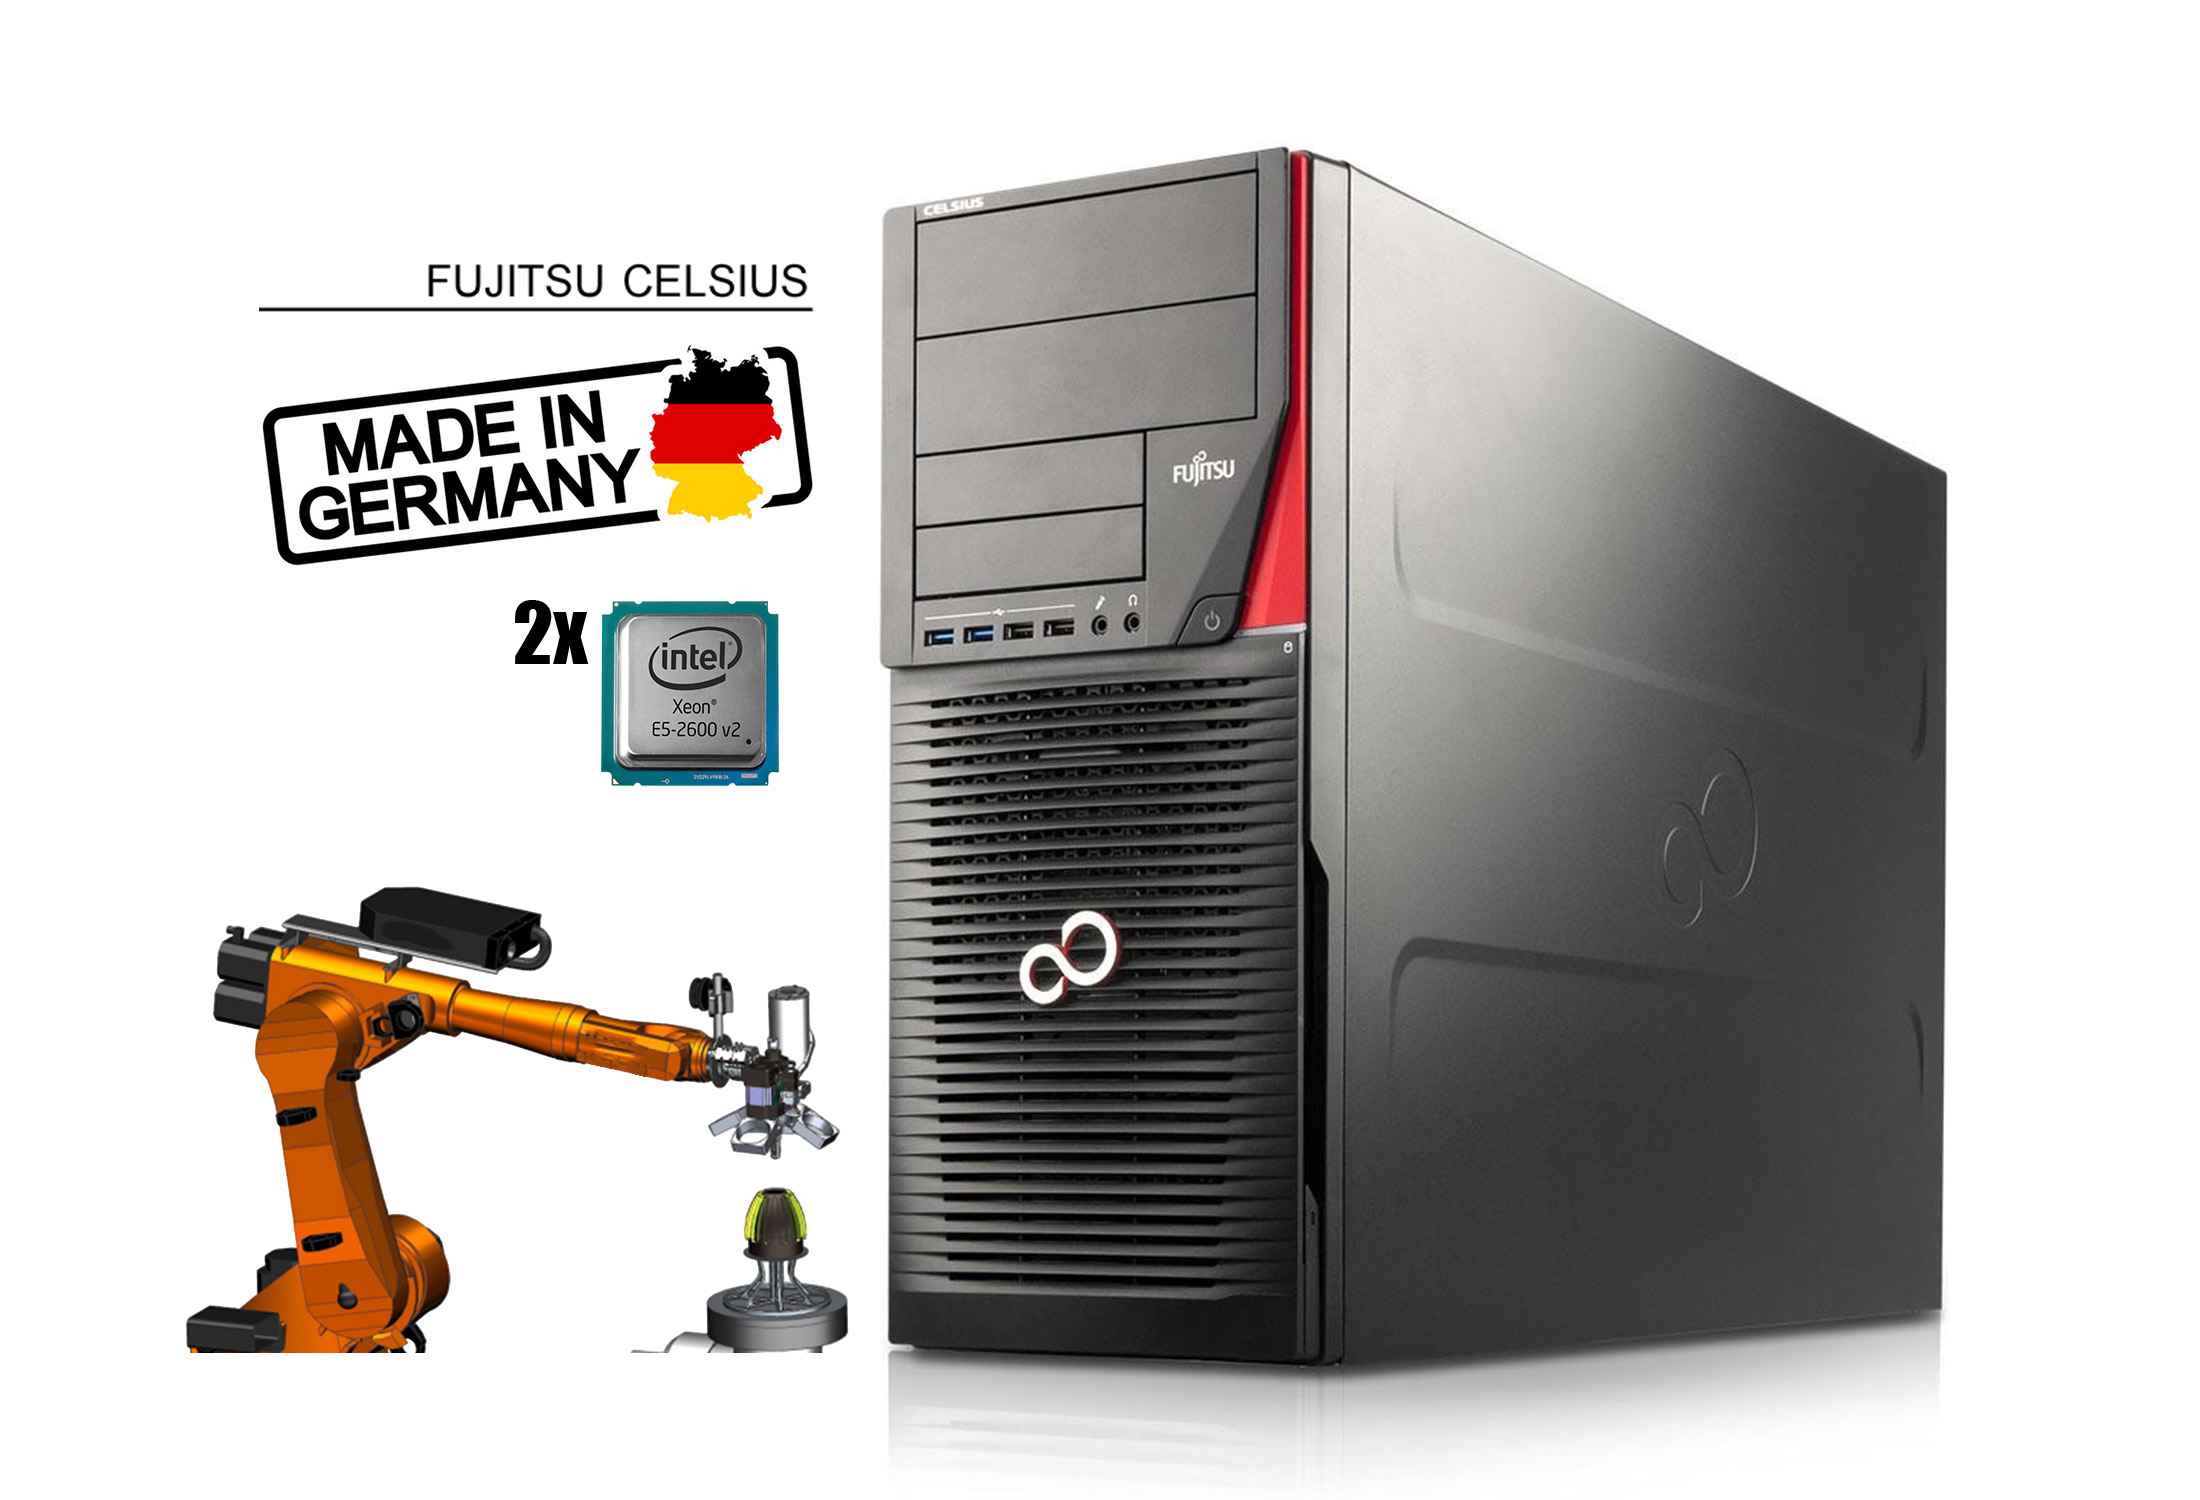 Fujitsu Celsius R930 Power 2x Xeon E5-2643 v2 64GB RAM SSD Quadro K2200